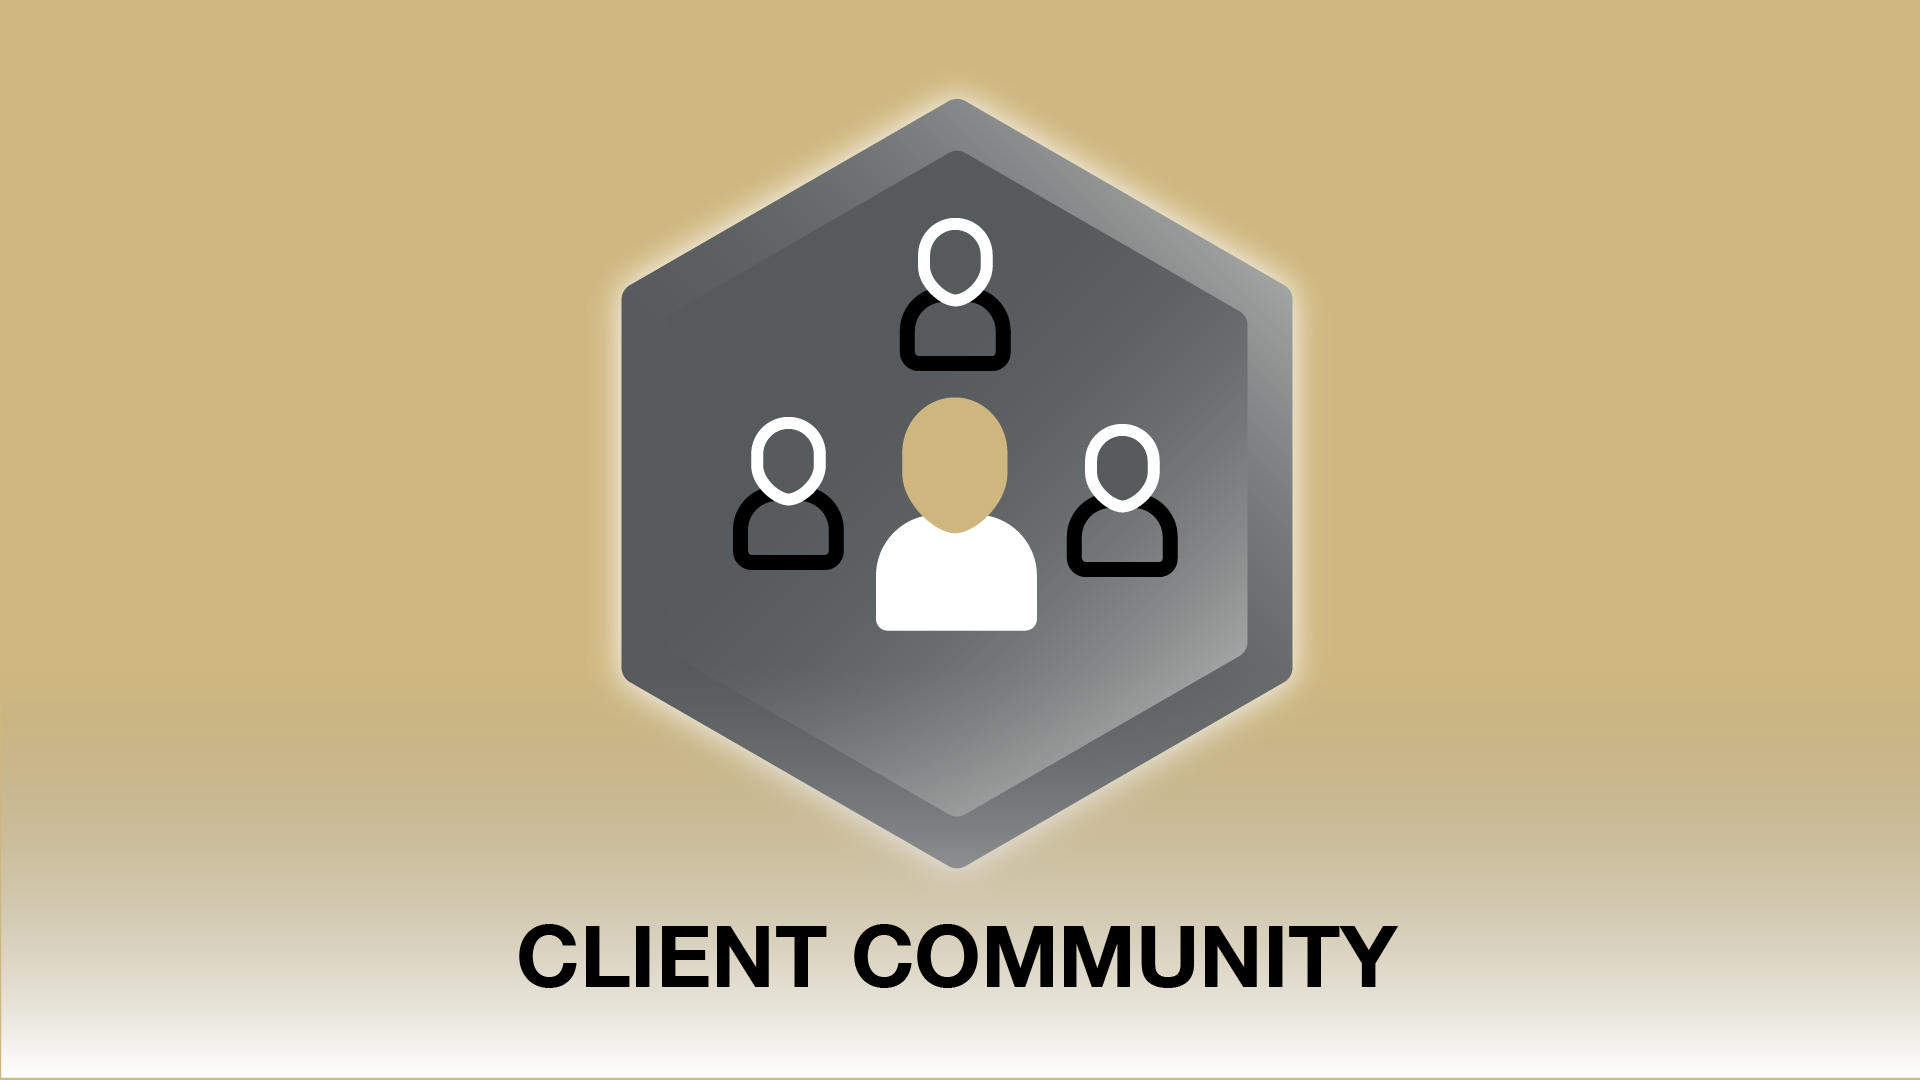 Client community